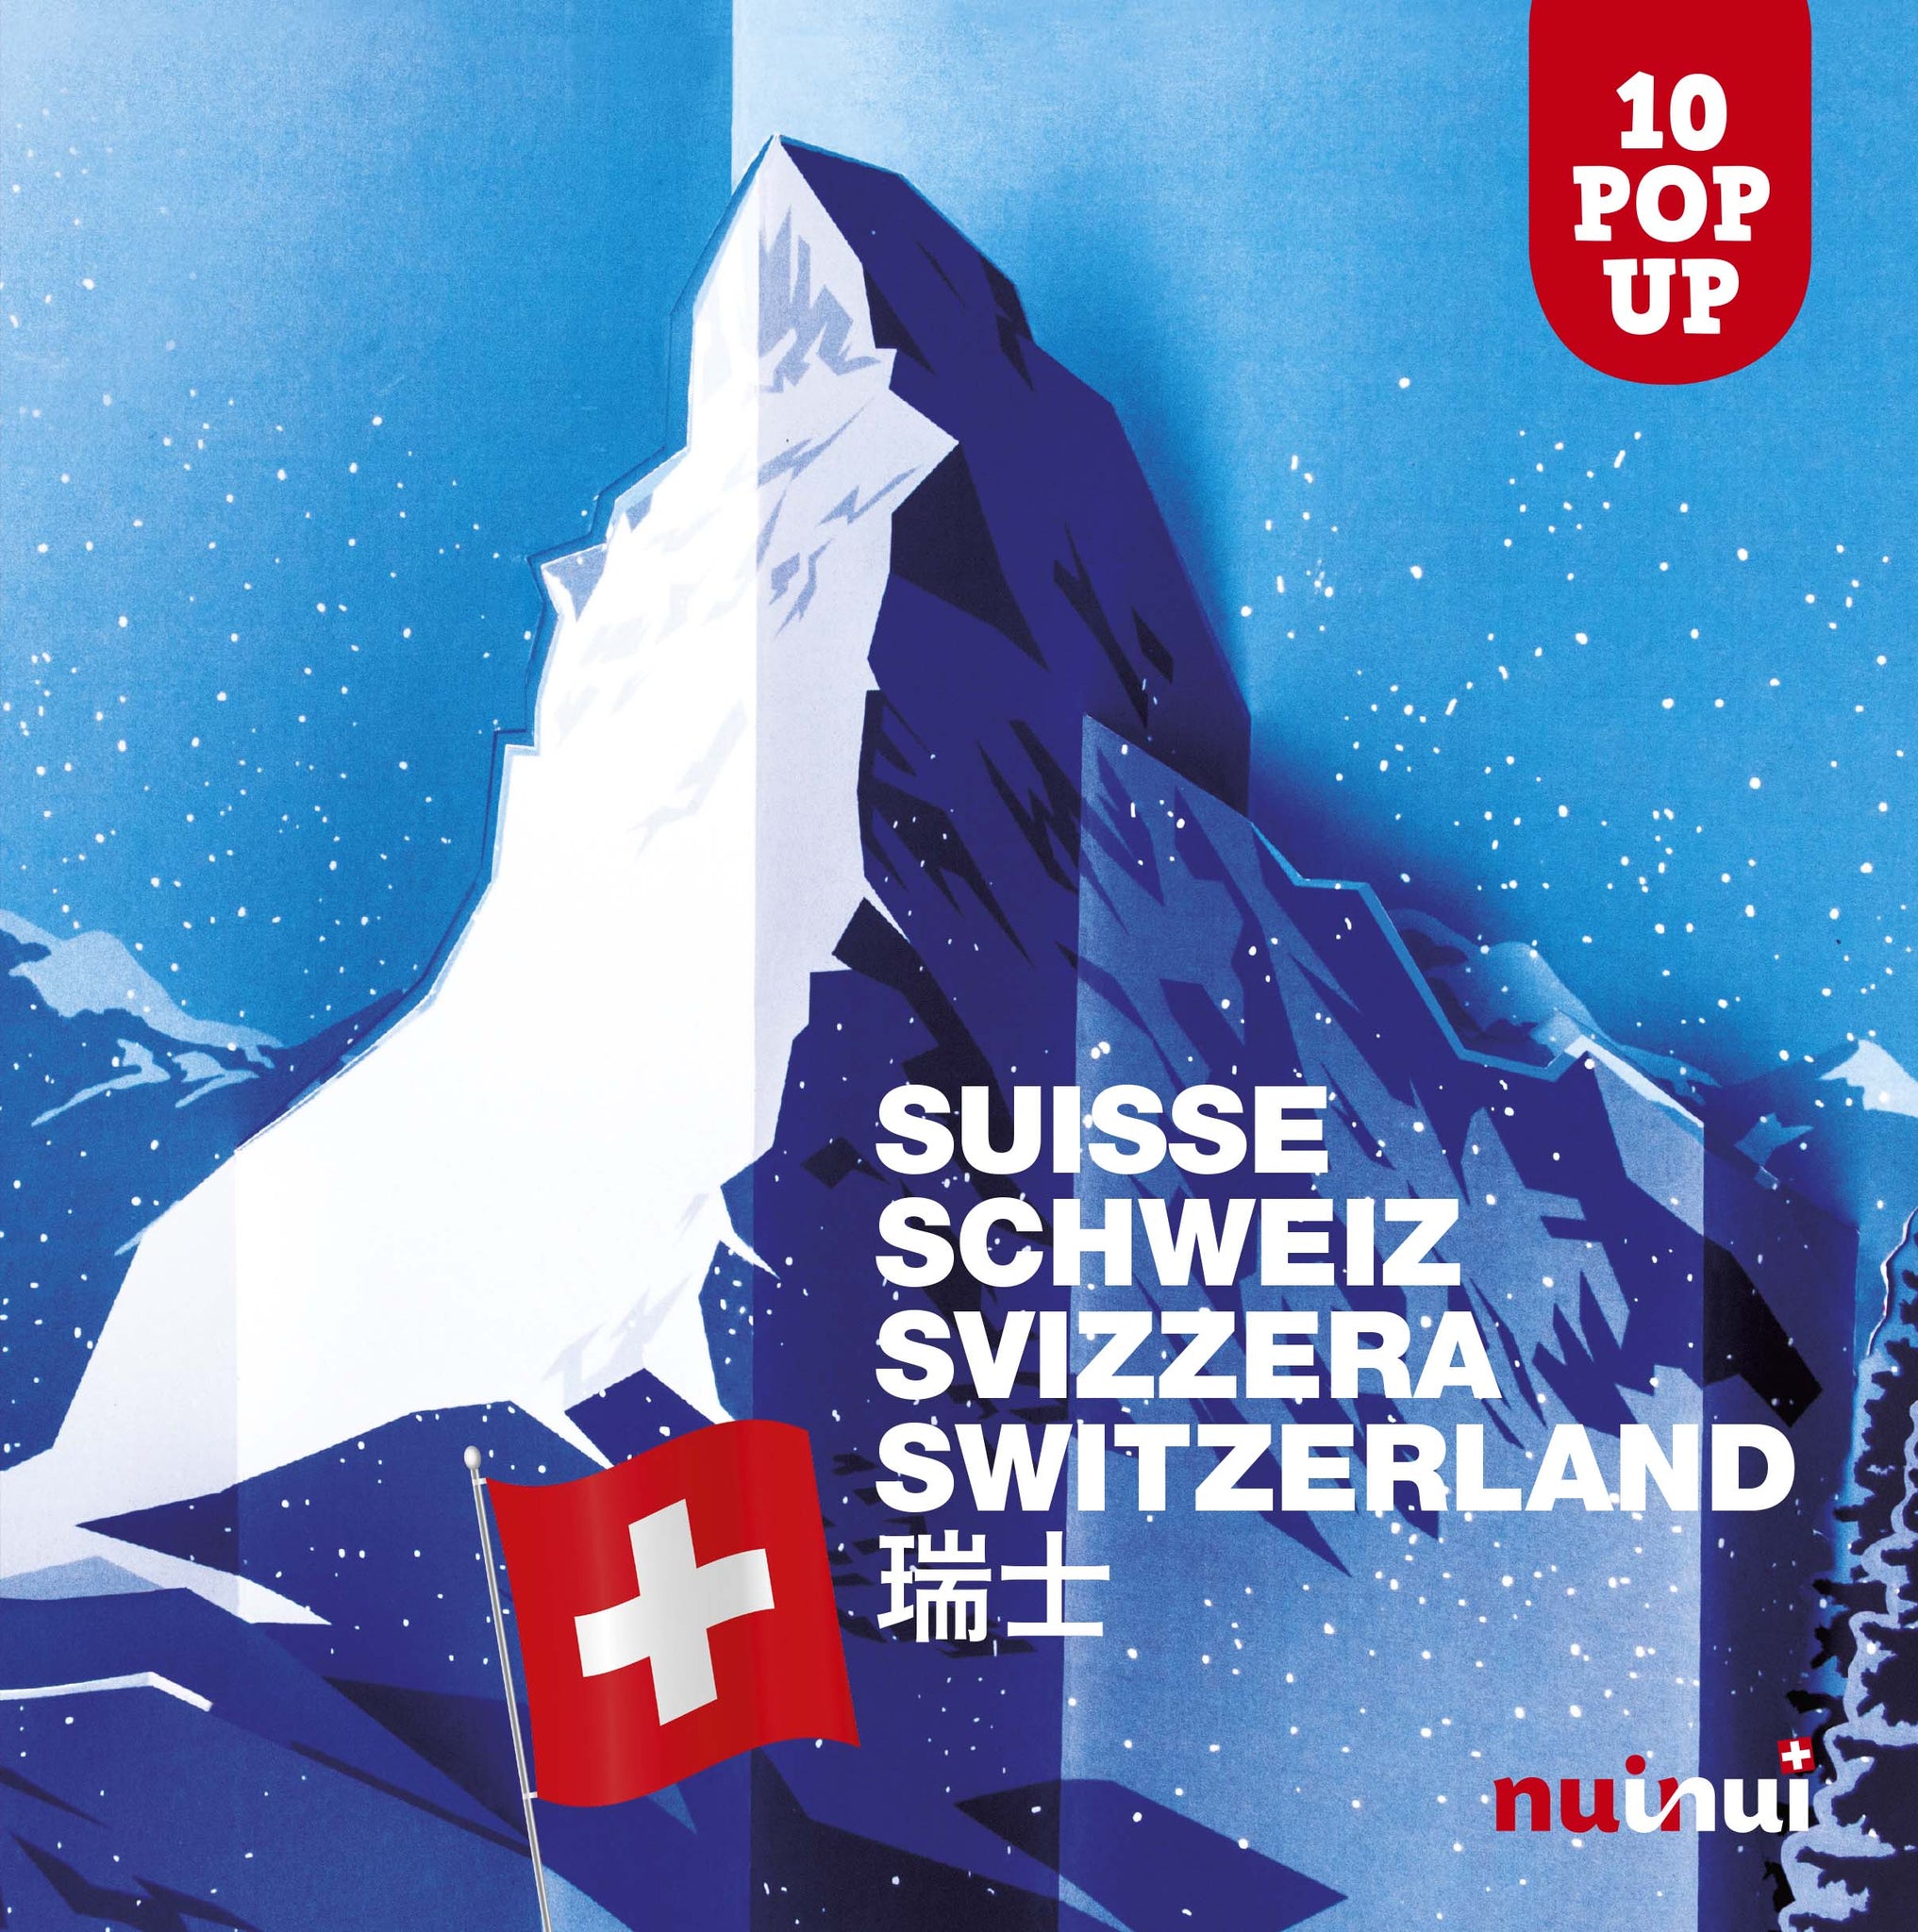 Saisissants pop-up - Suisse